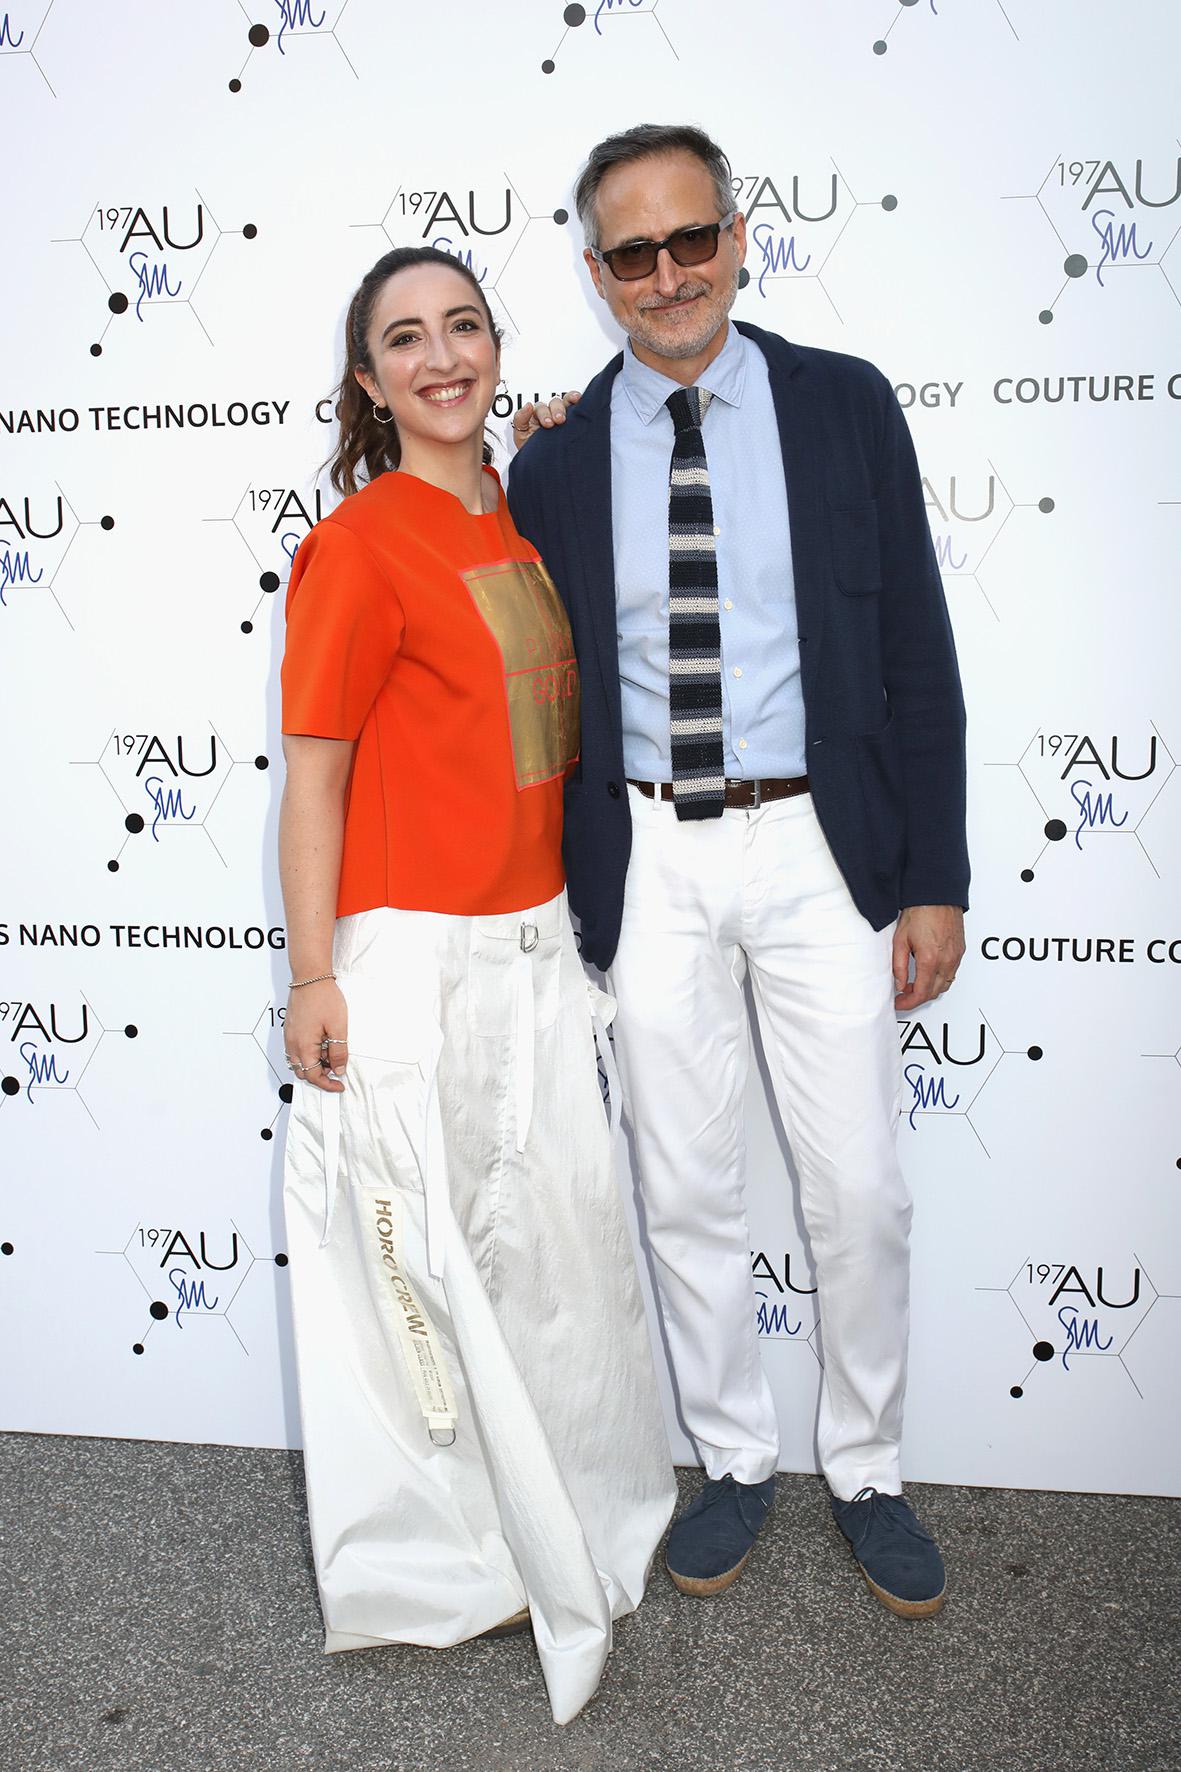 David Warren and Anna Ferraioli Ravel (Photo by Elisabetta Villa/Getty Images for AU197SM / AltaRoma)